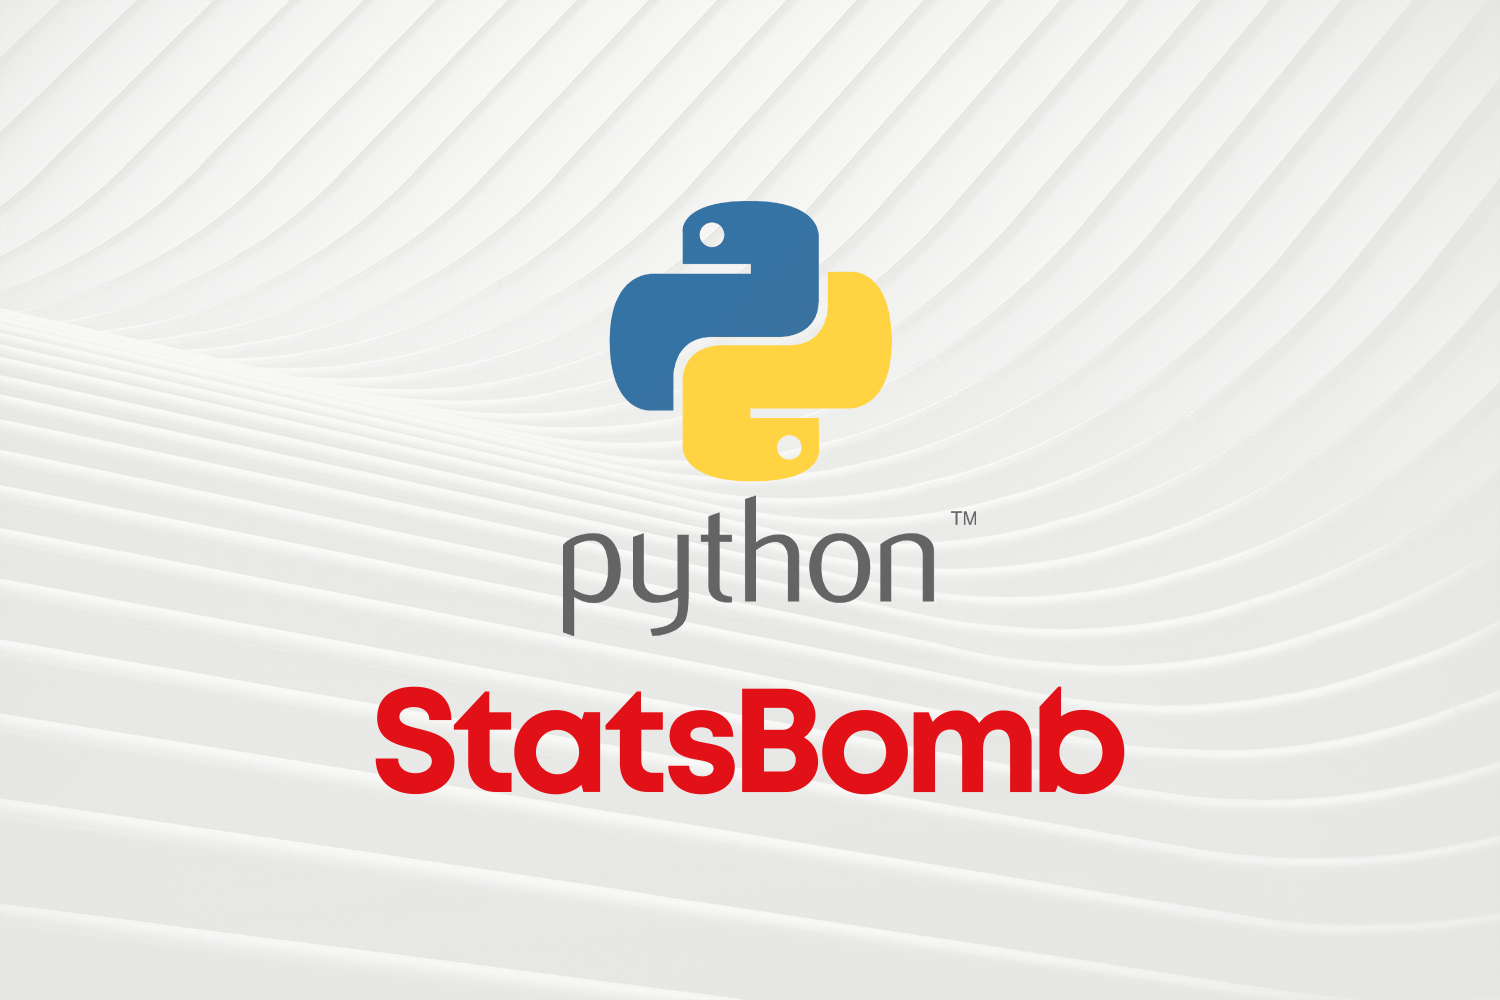 StatsBomb Launch Custom Python Tool: "statsbombpy"